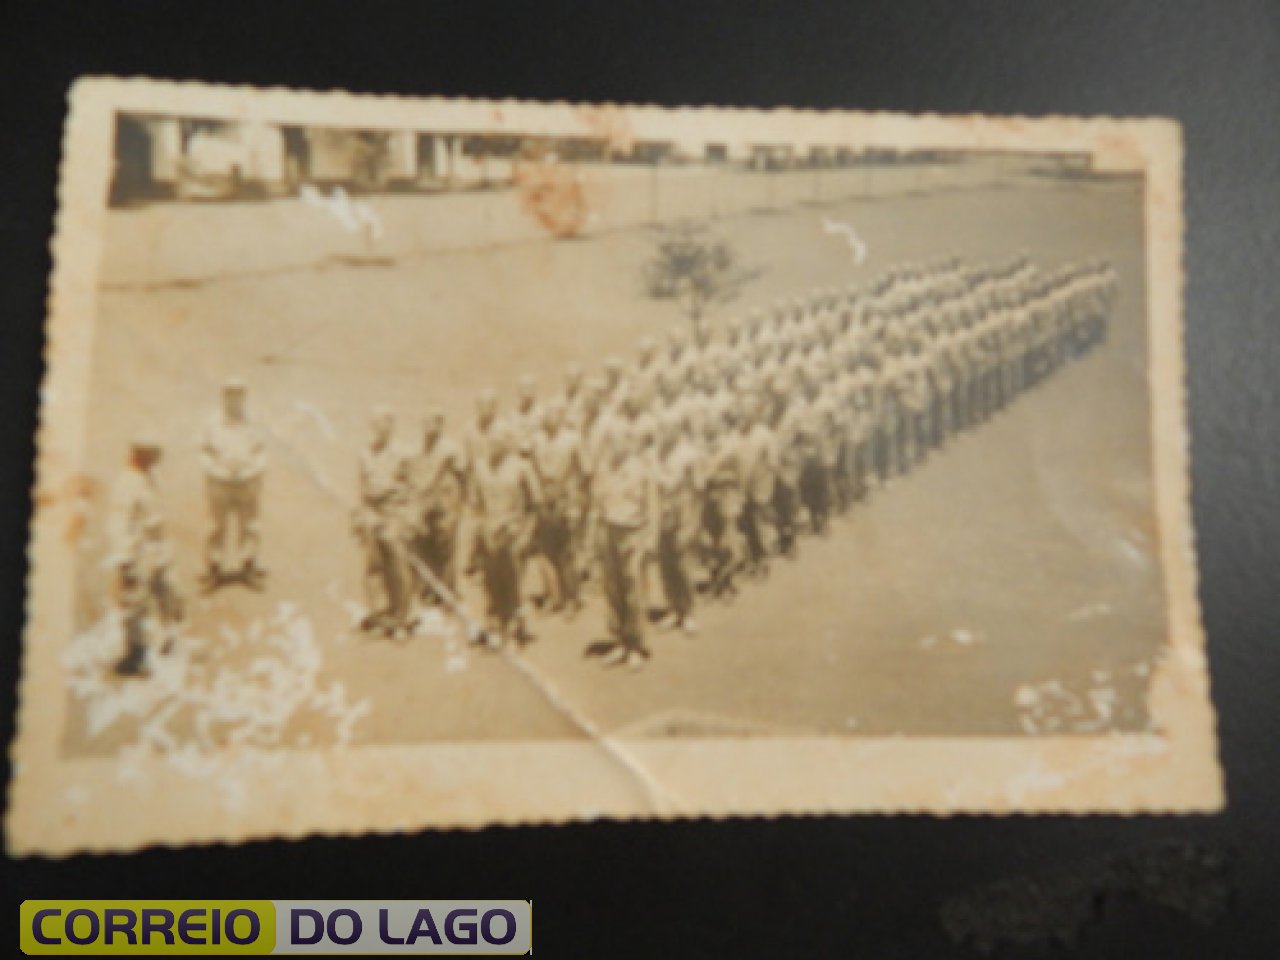 Pelotão do exército da cidade de Santo Ângelo RS. Bronildo Bender é um dos integrantes deste agrupamento militar. Década de 1950.